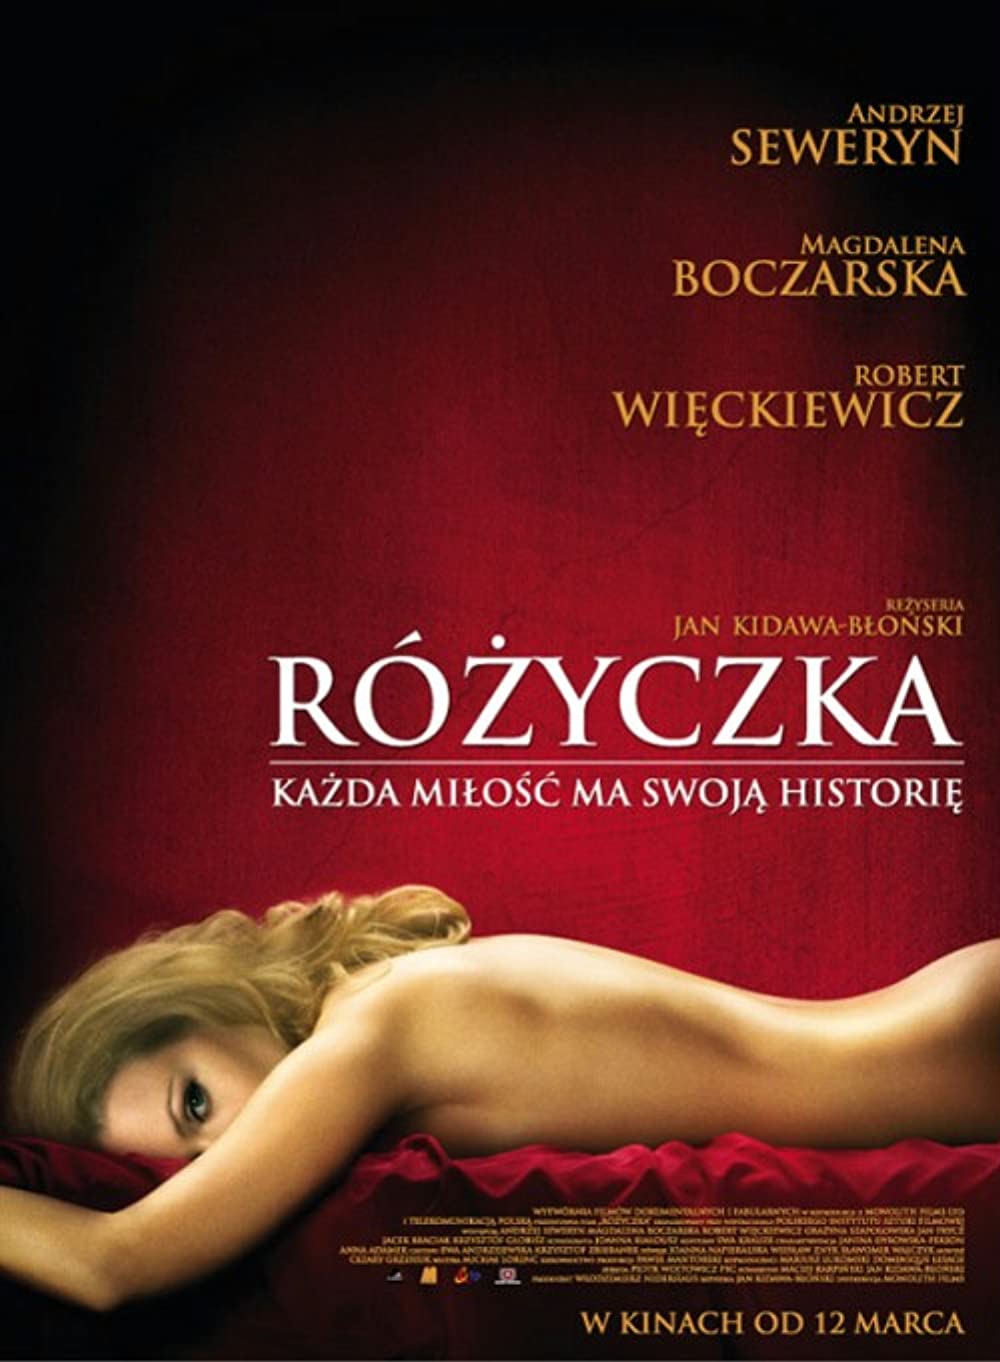 Download Rózyczka Movie | Download Rózyczka